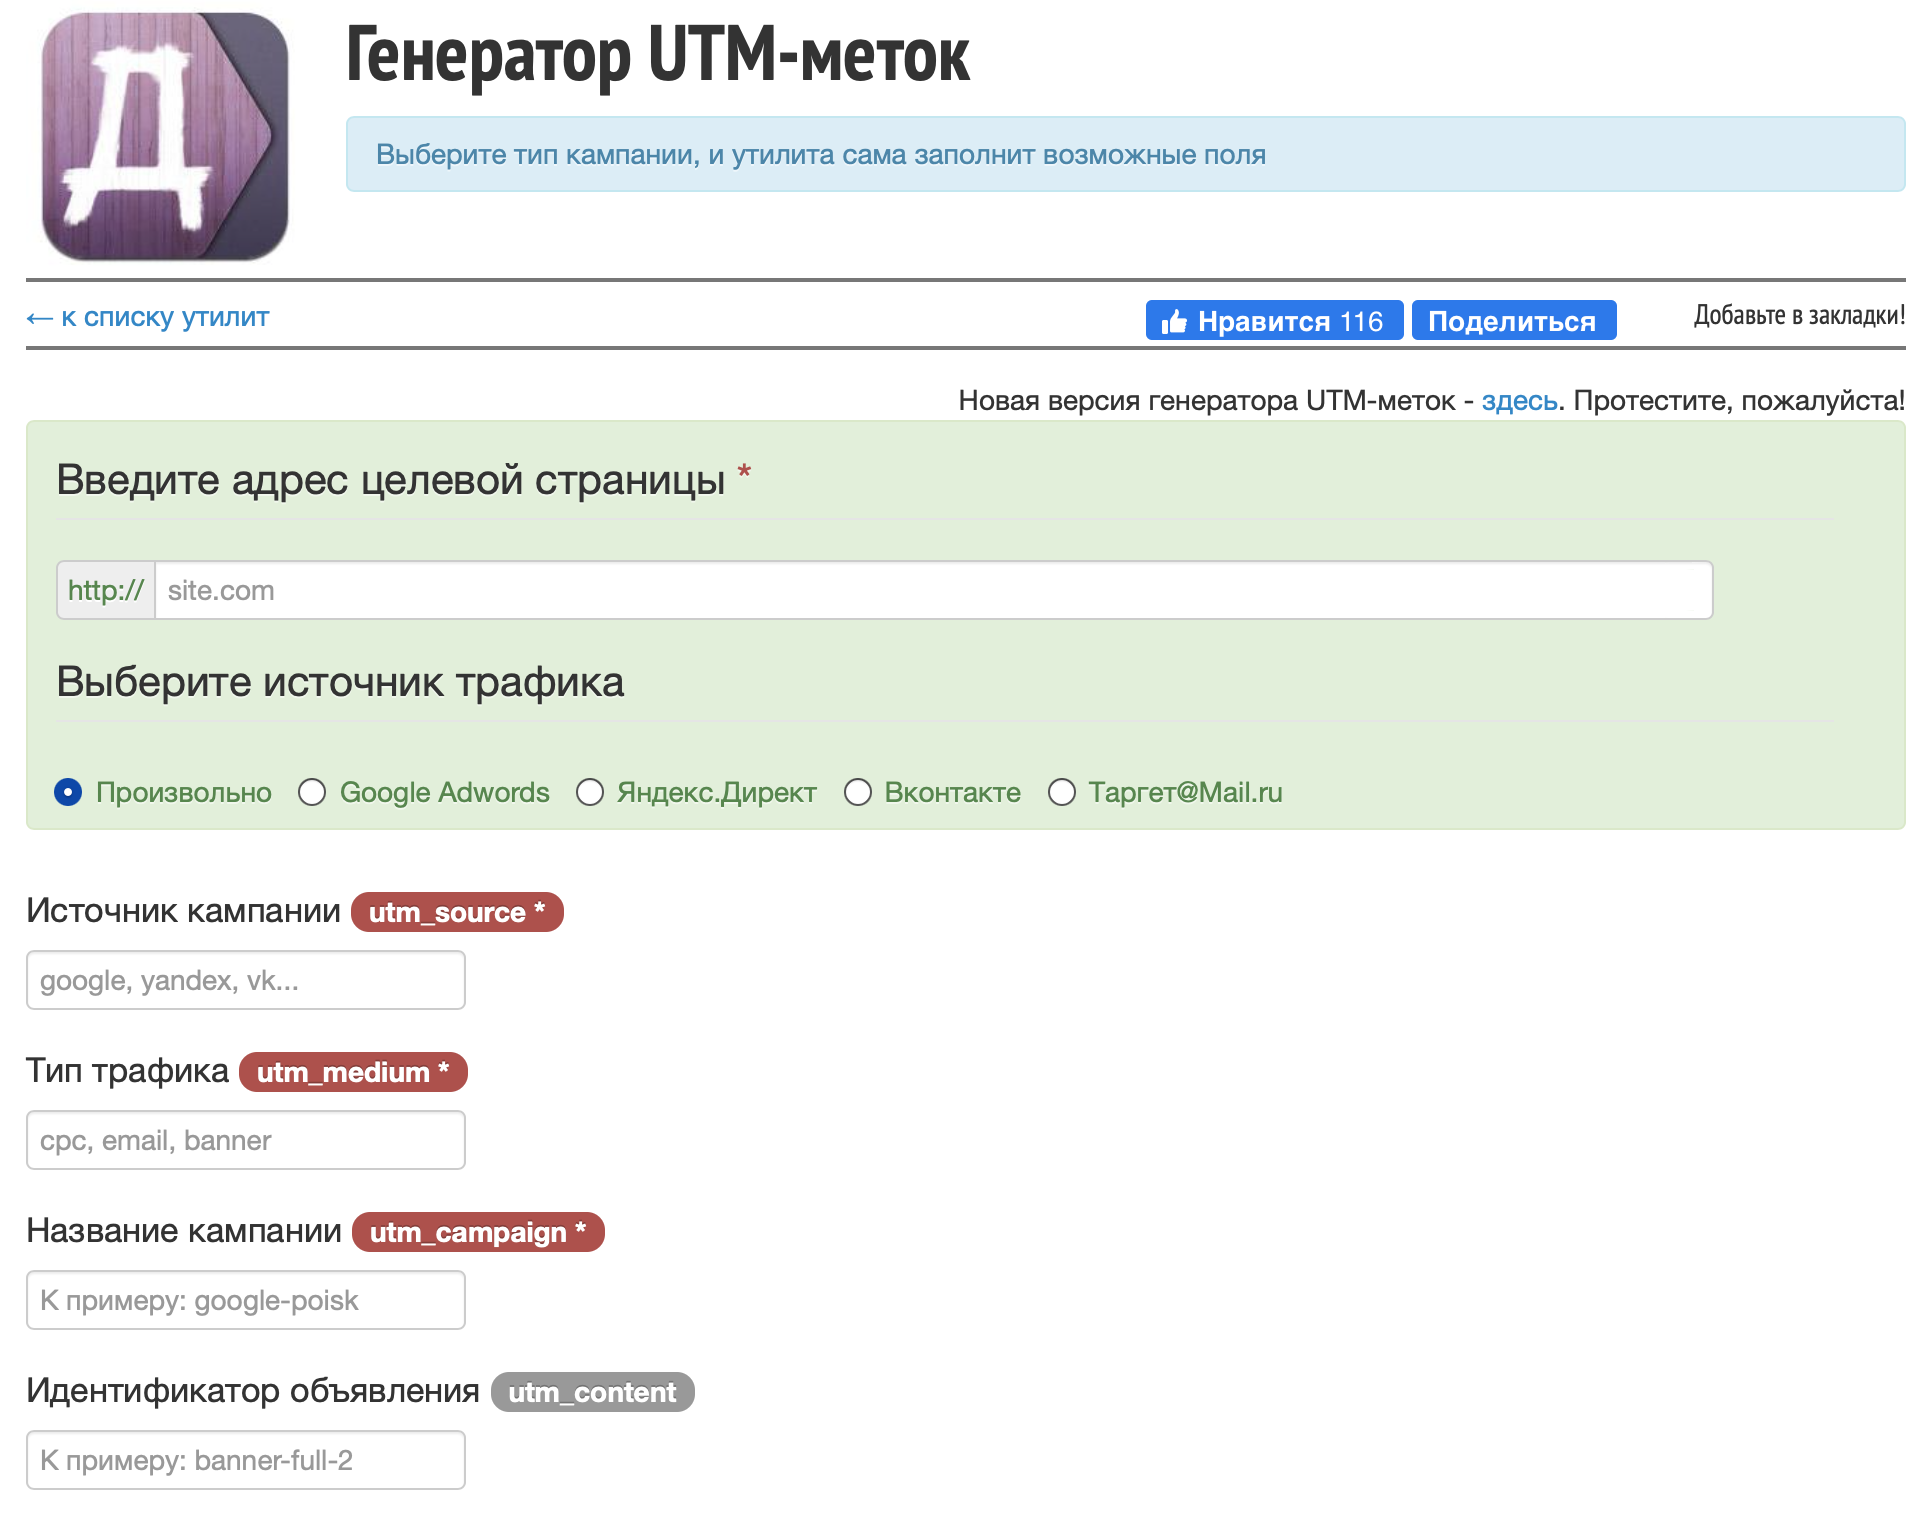 Как выглядит генератор UTM-меток от Алексея Ярошенко